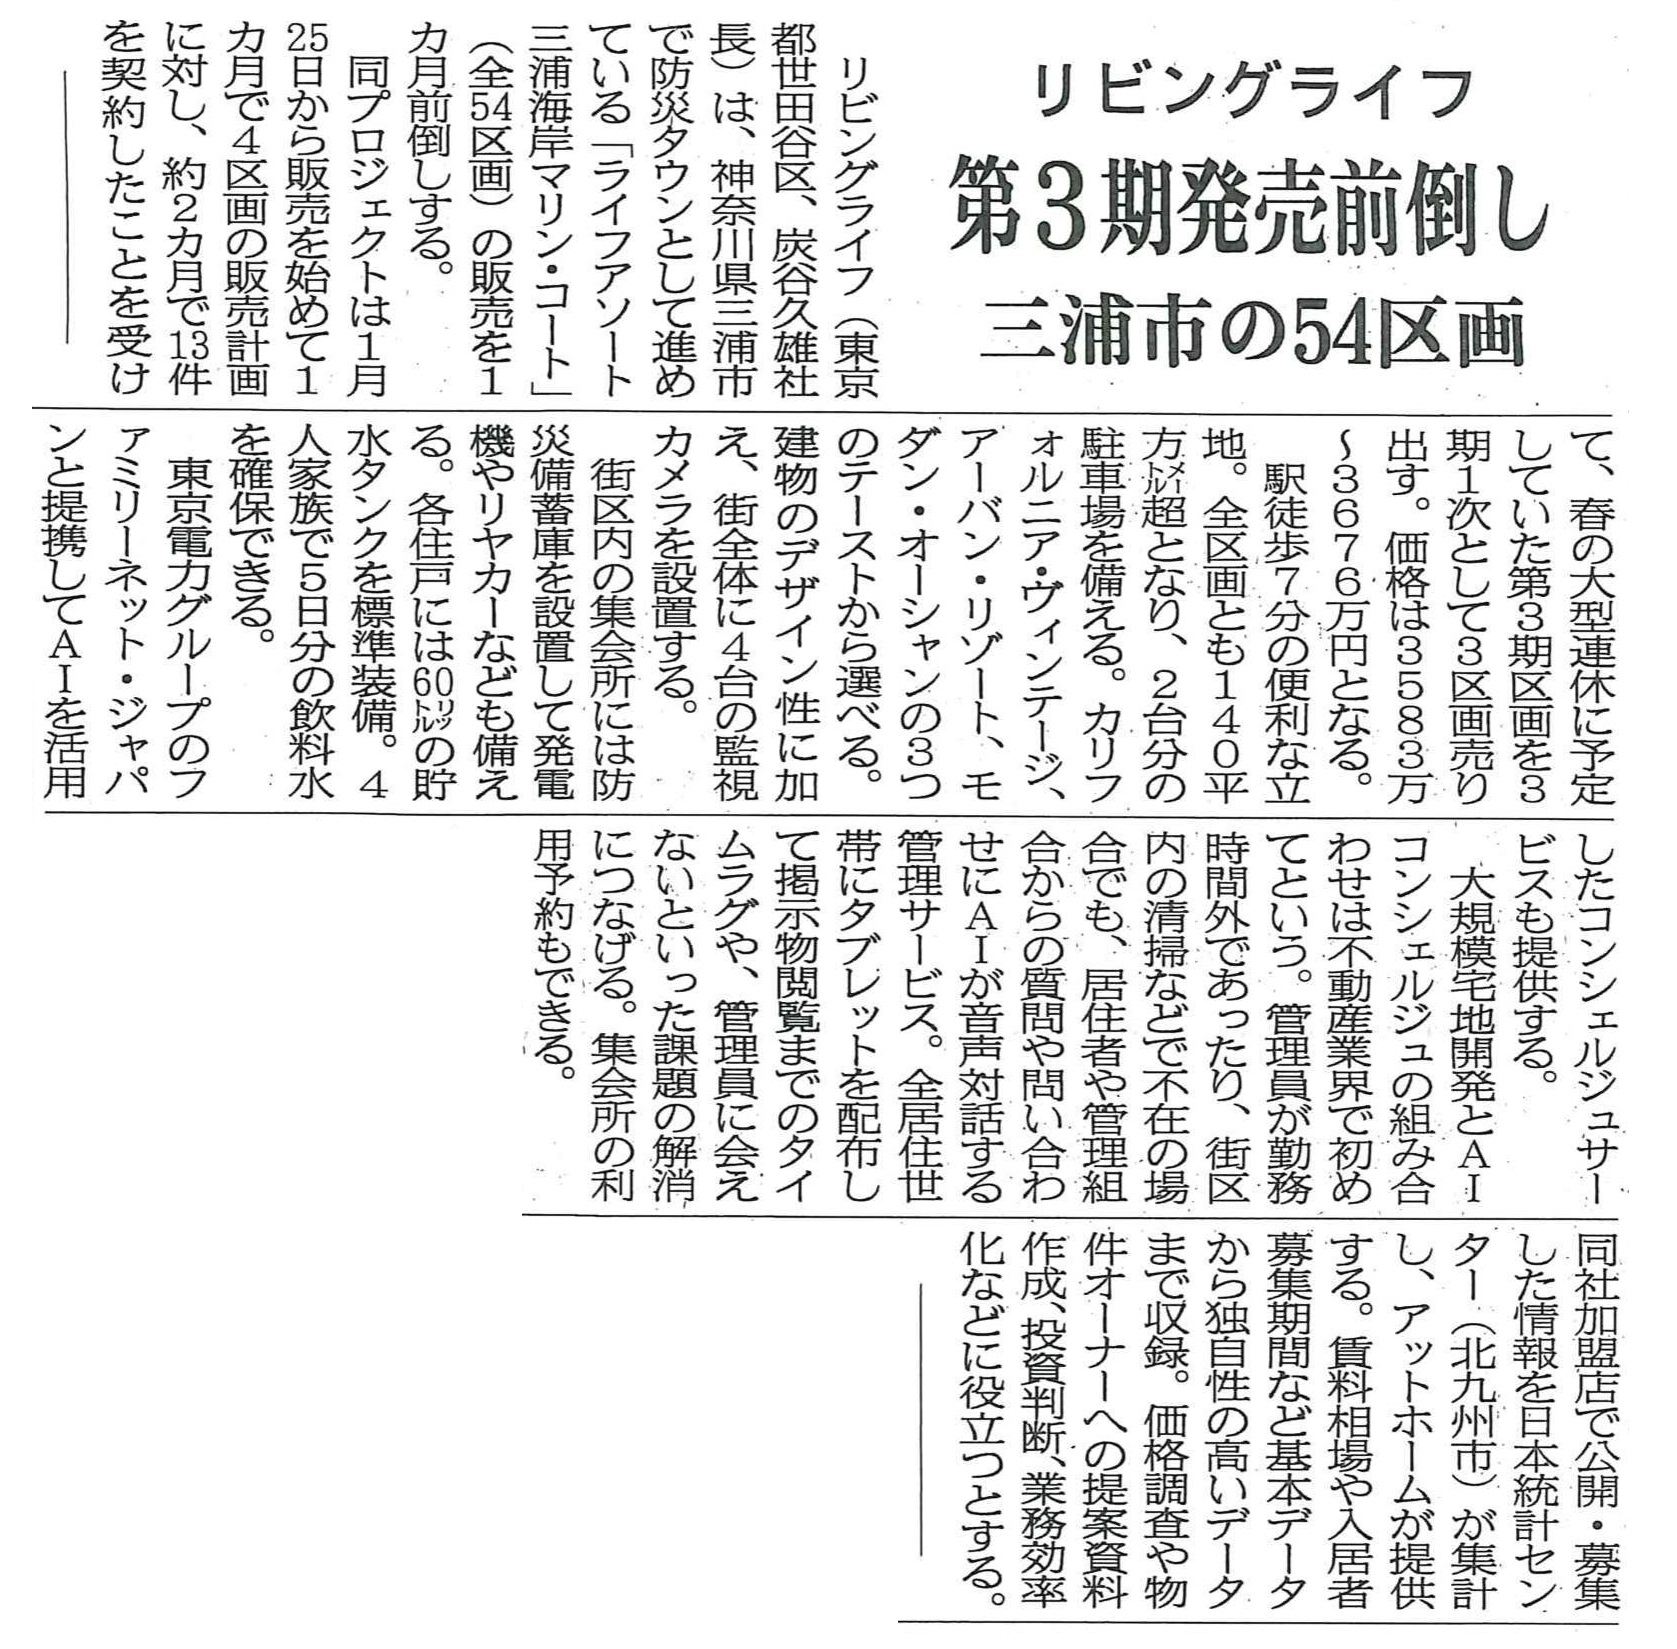 「ライフアソート三浦海岸マリン・コート」第3期販売、前倒しの記事が『週刊住宅』に掲載されました